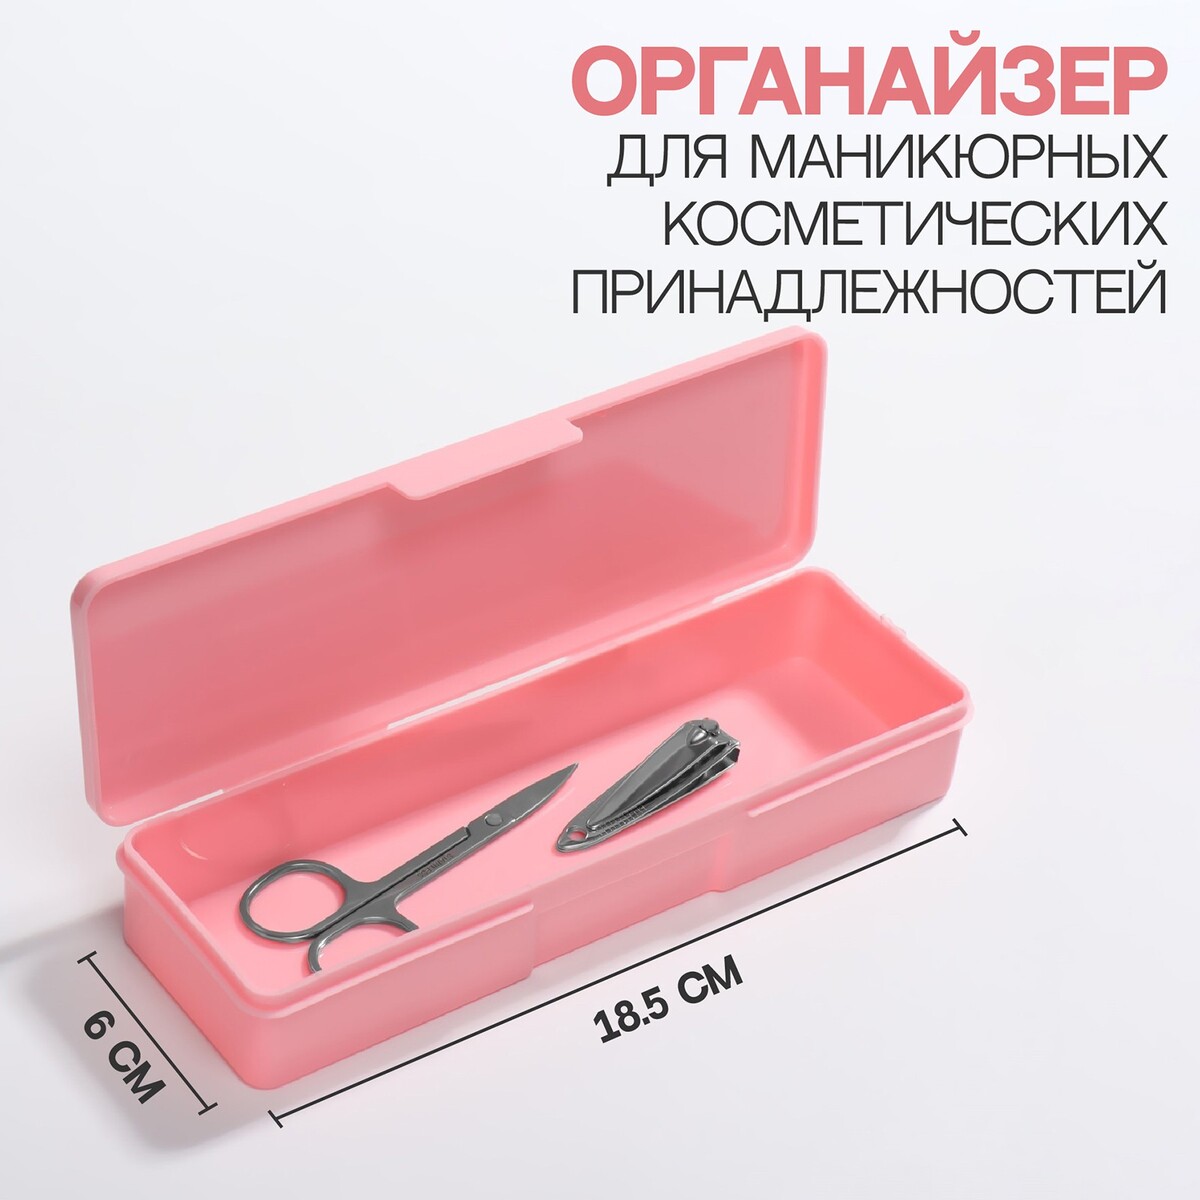 Органайзер для маникюрных/косметических принадлежностей, 18,5 × 6 × 3 см, цвет розовый Queen fair